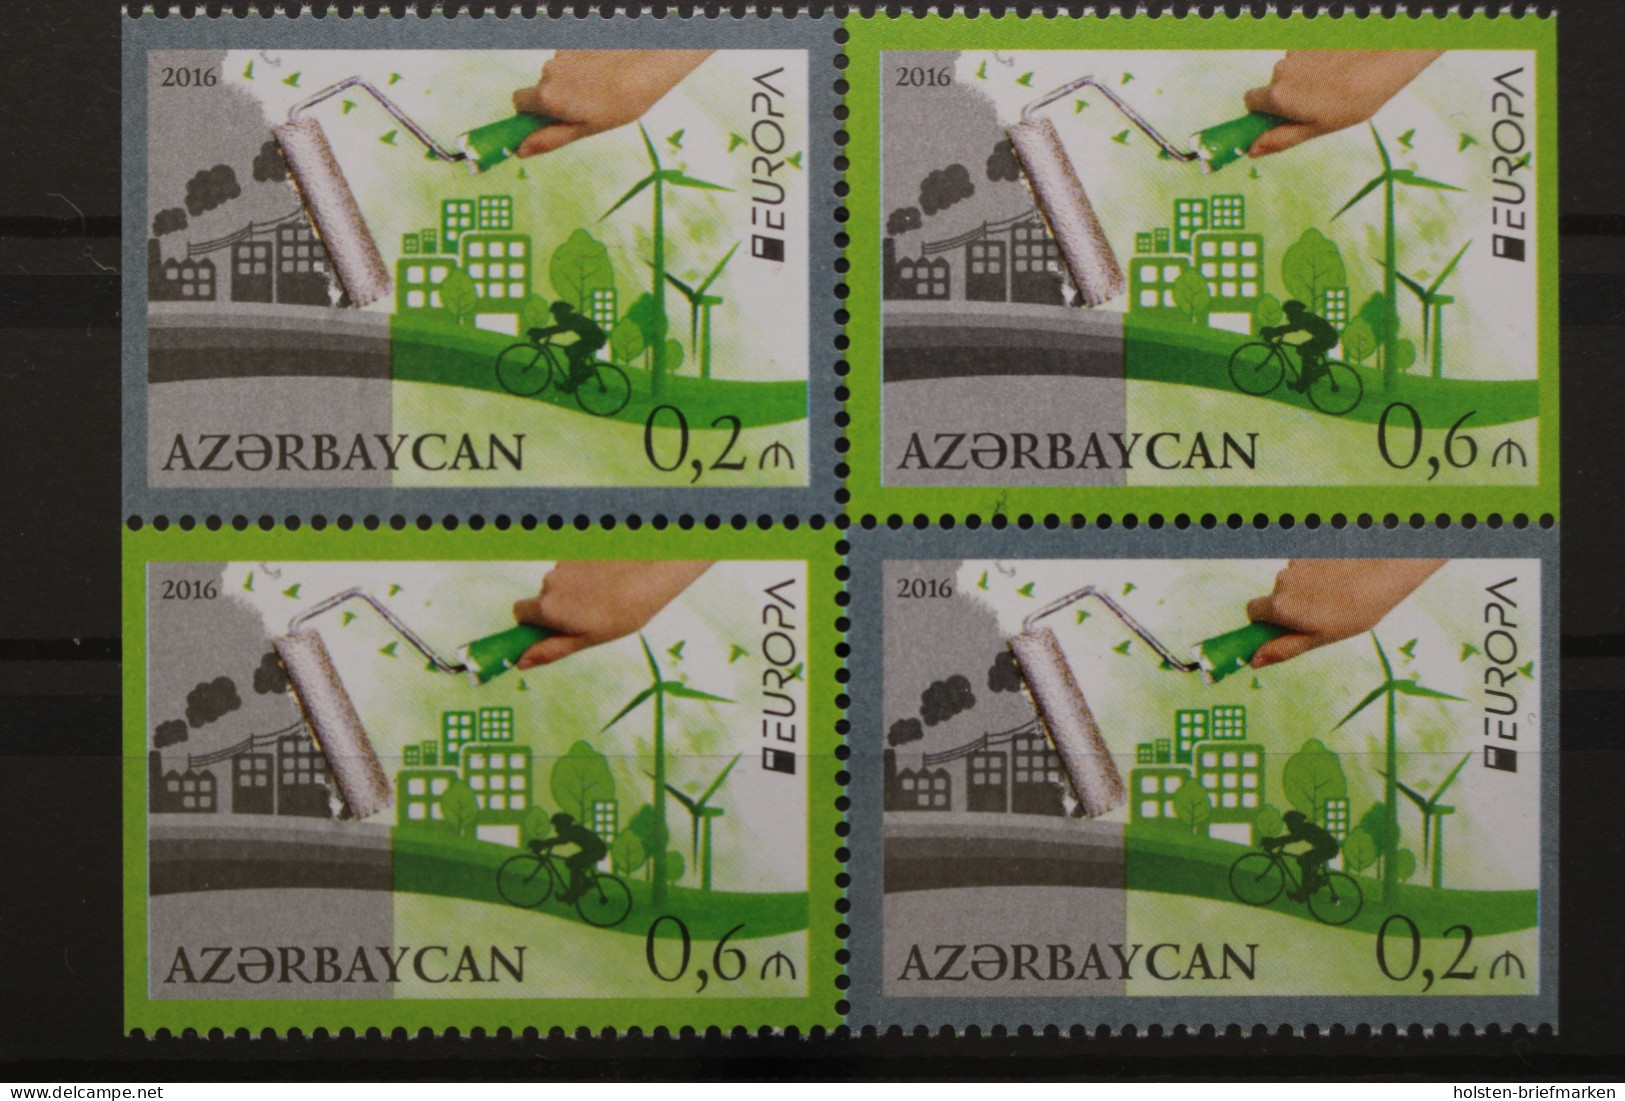 Aserbaidschan, MiNr. 1140-1141 D, Heftchenblatt, Postfrisch - Azerbaïjan